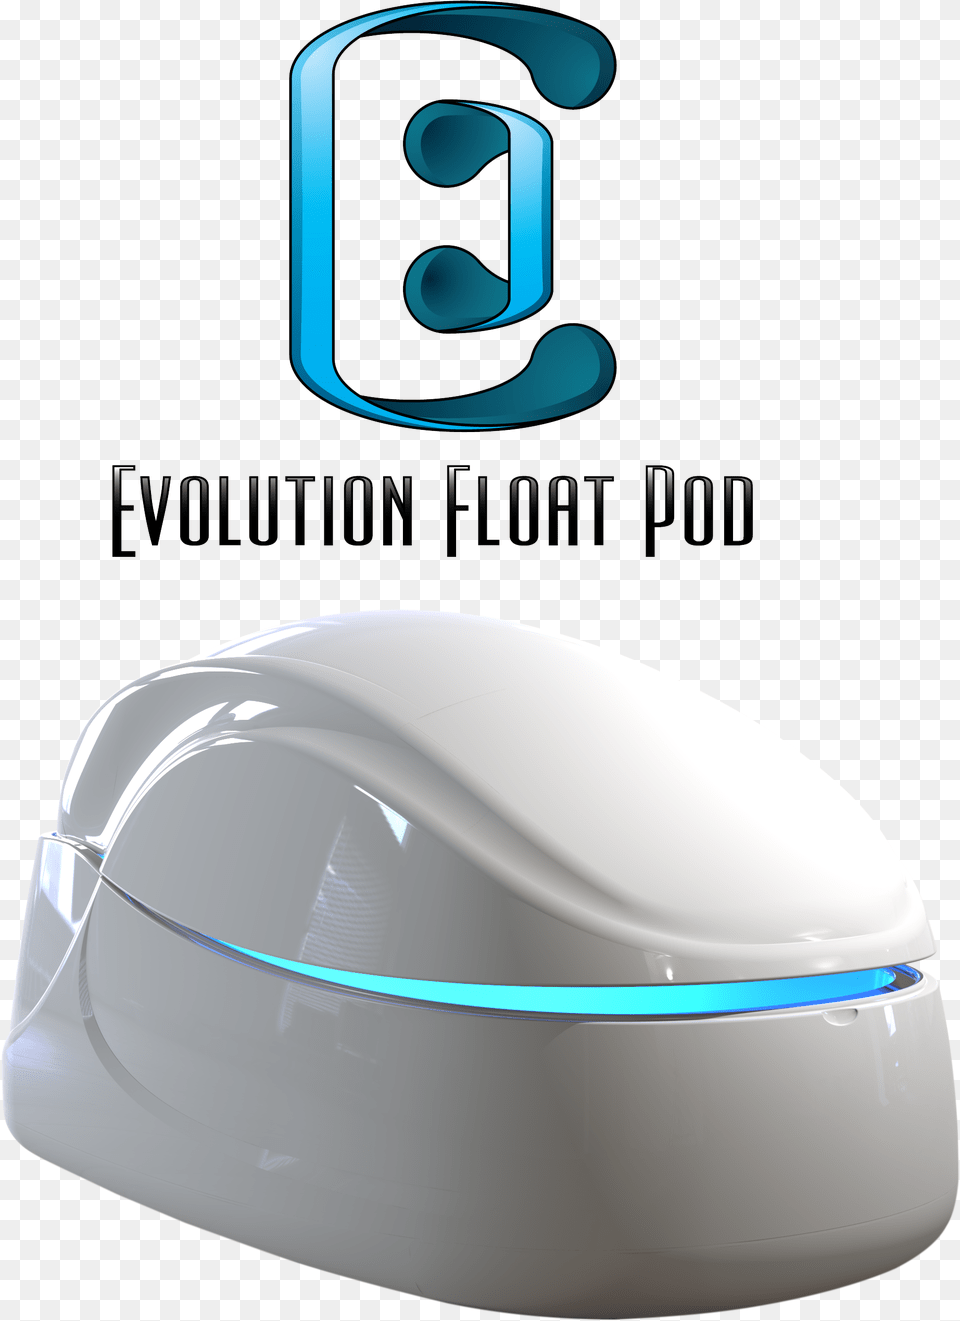 Evolution Float Pod Float Pod, Computer Hardware, Electronics, Hardware, Mouse Free Png Download